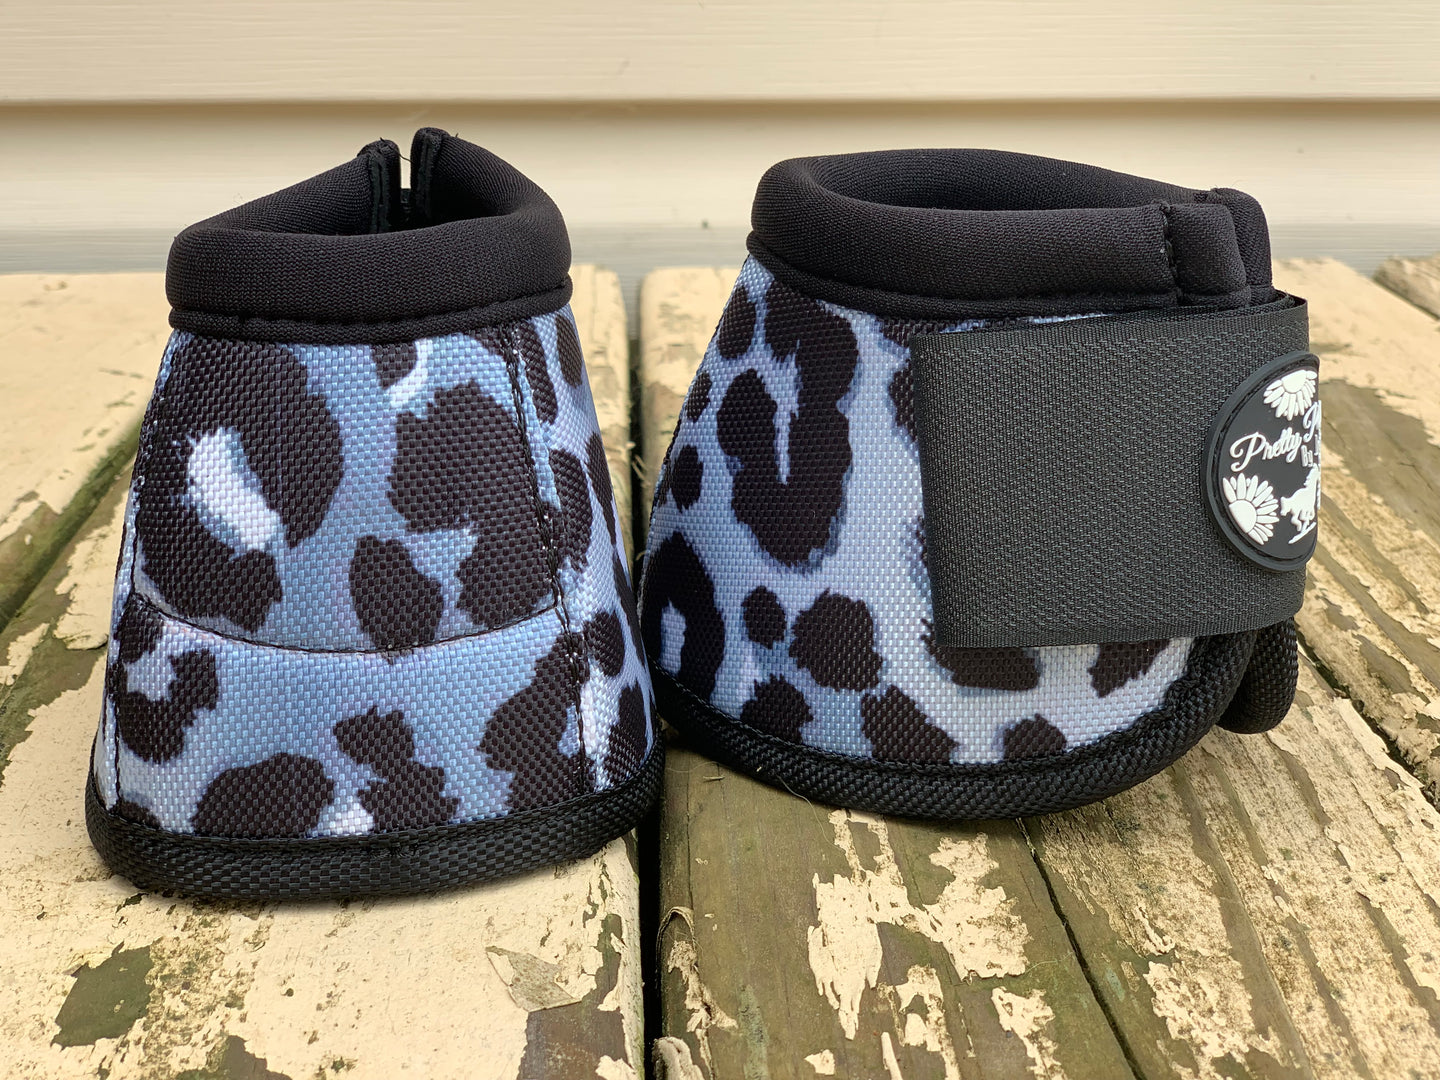 Snow cheetah bell boots